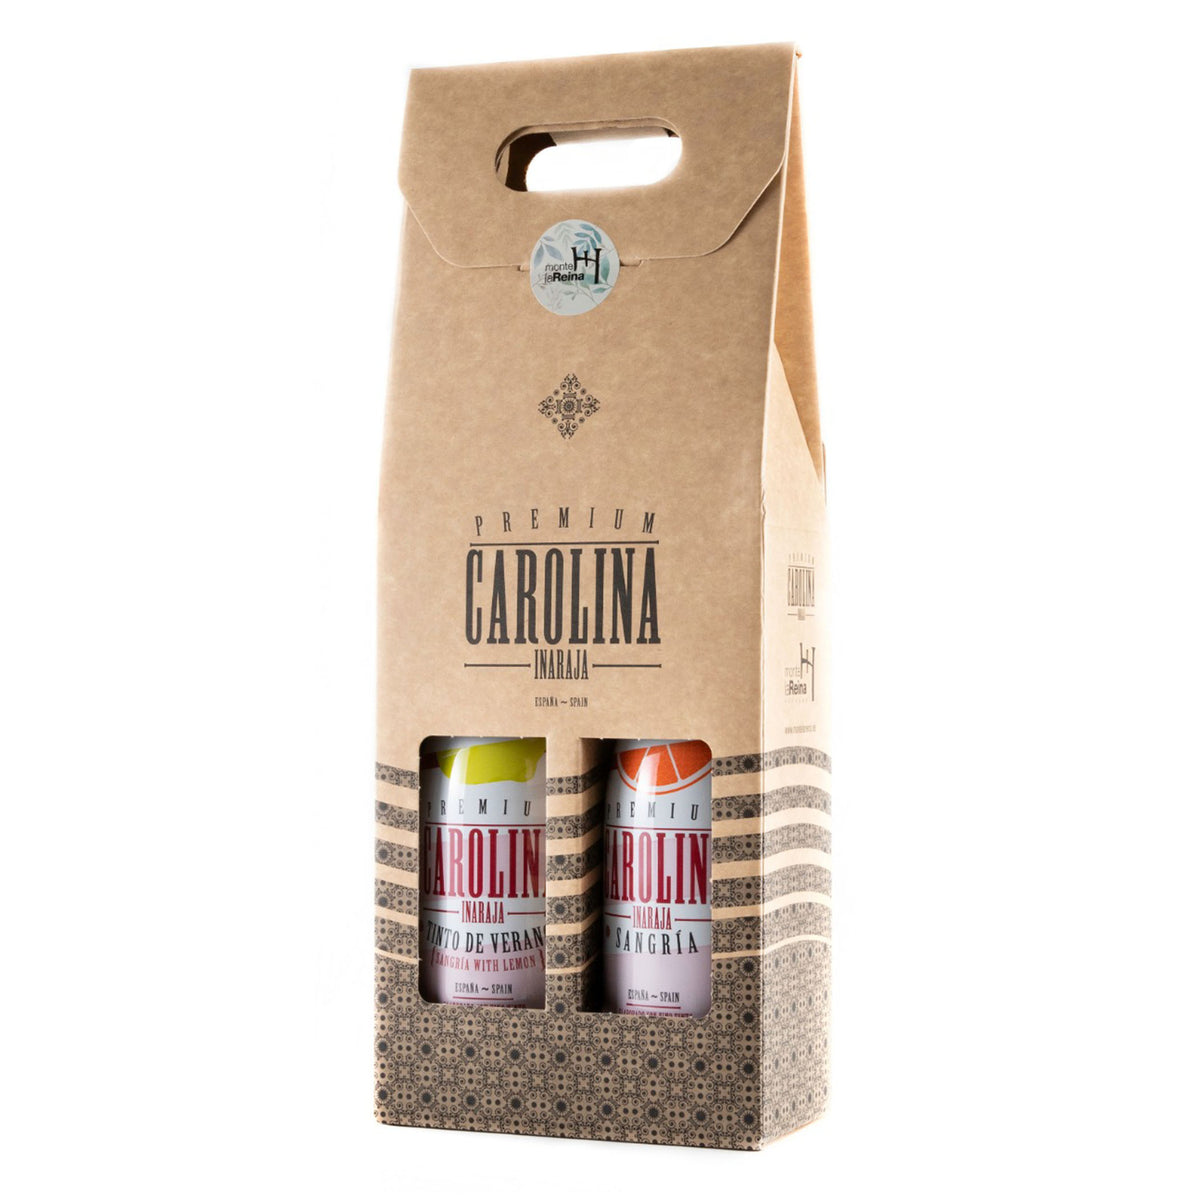 Carolina Inaraja Premium Sangria Bundle - Pack of 2